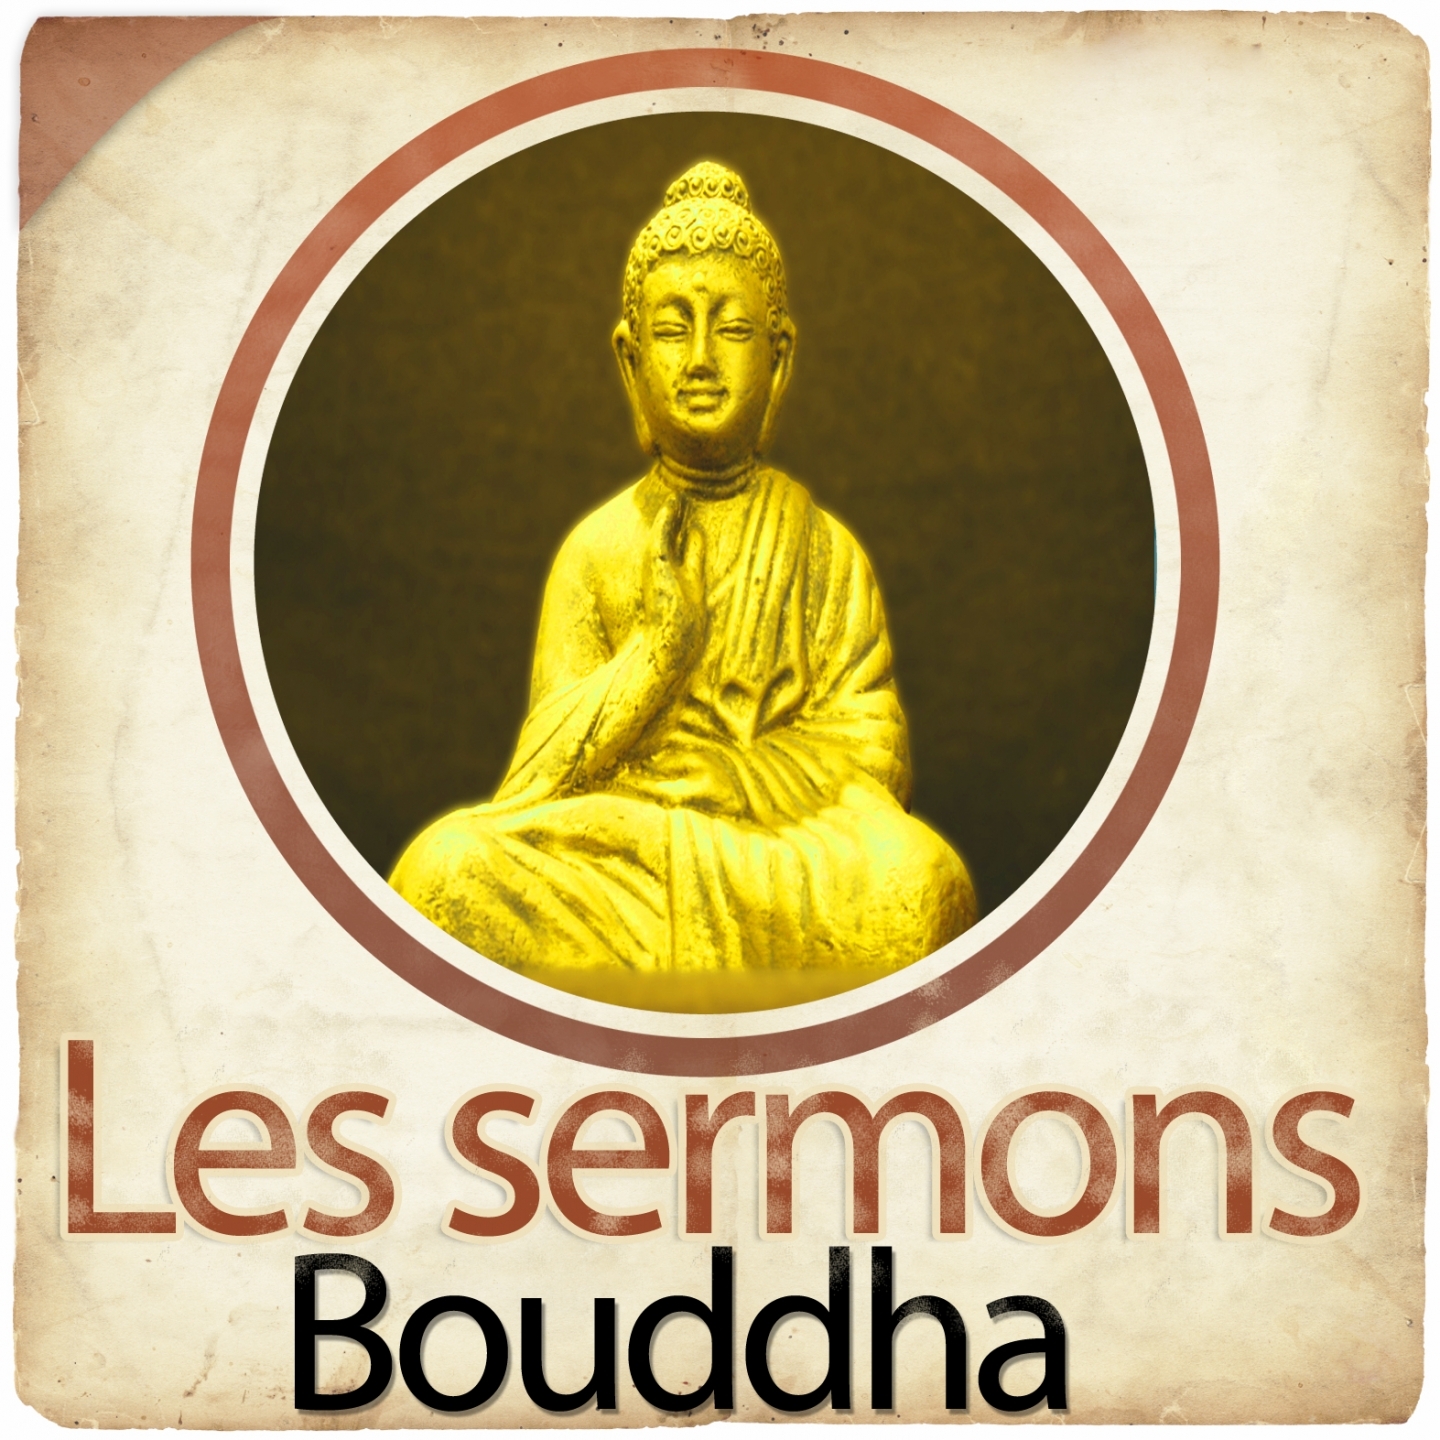 Les sermons de Bouddha : la référence pour le Bouddhisme